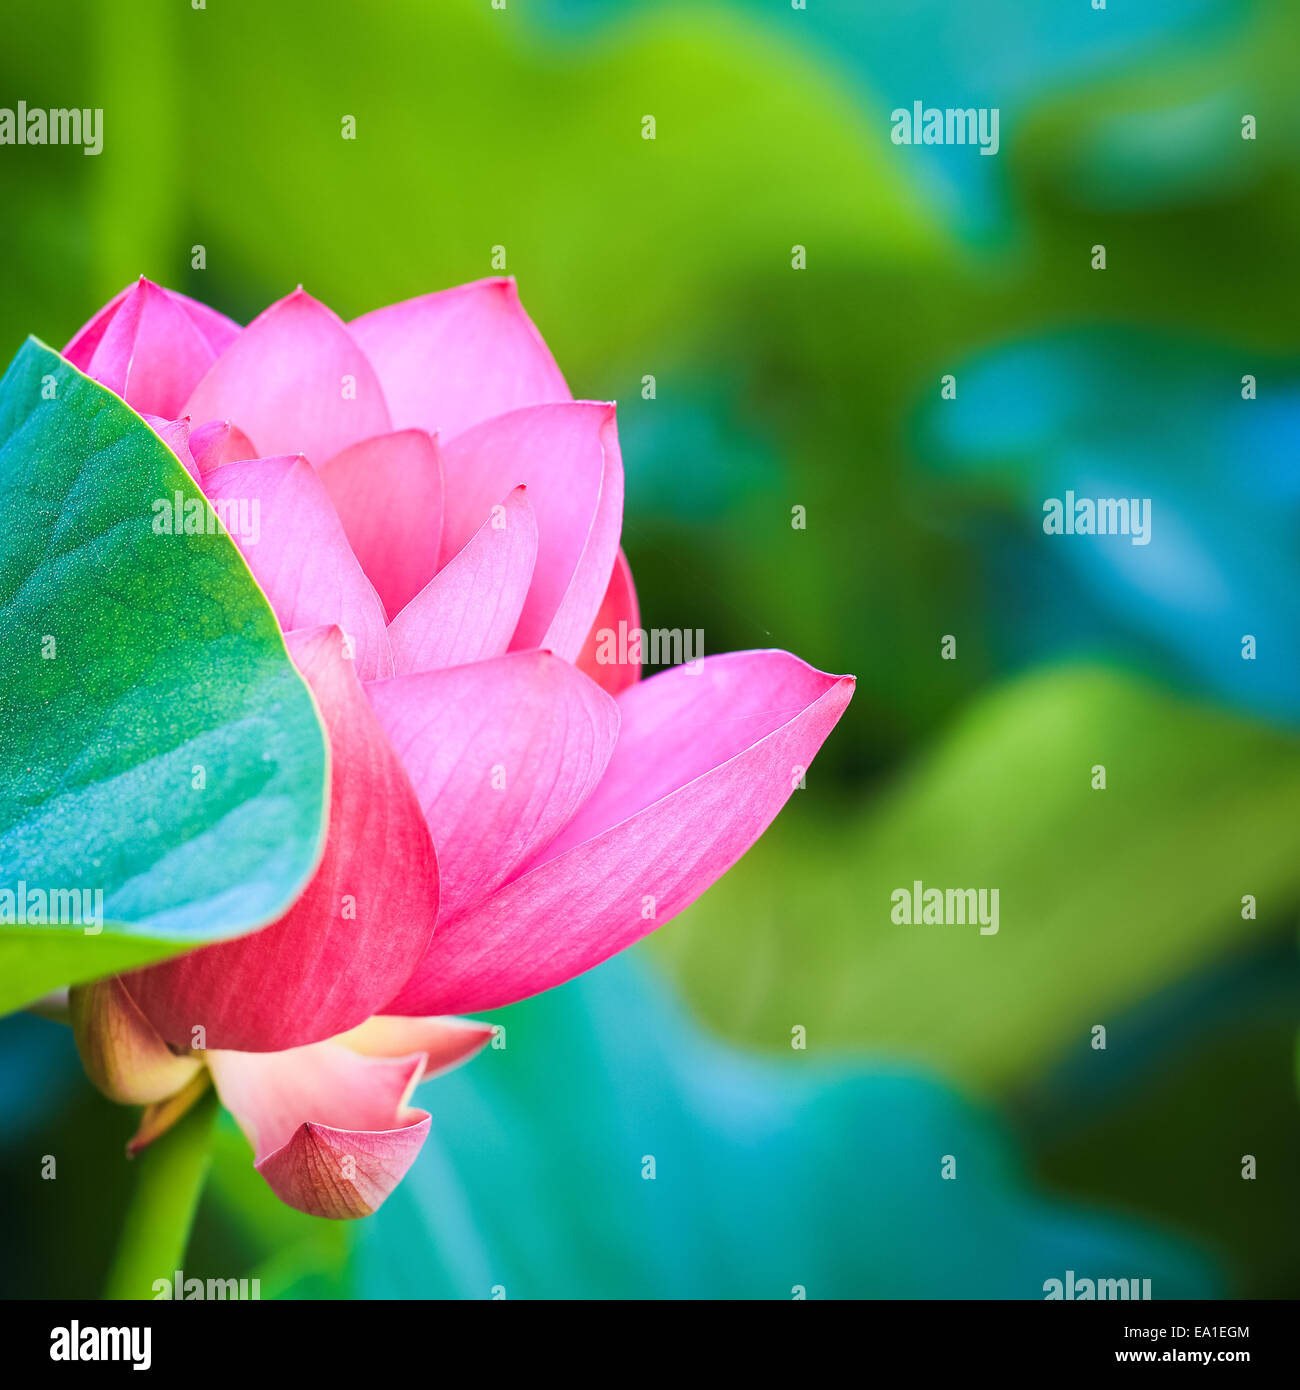 Fiore di loto in fioritura Foto Stock